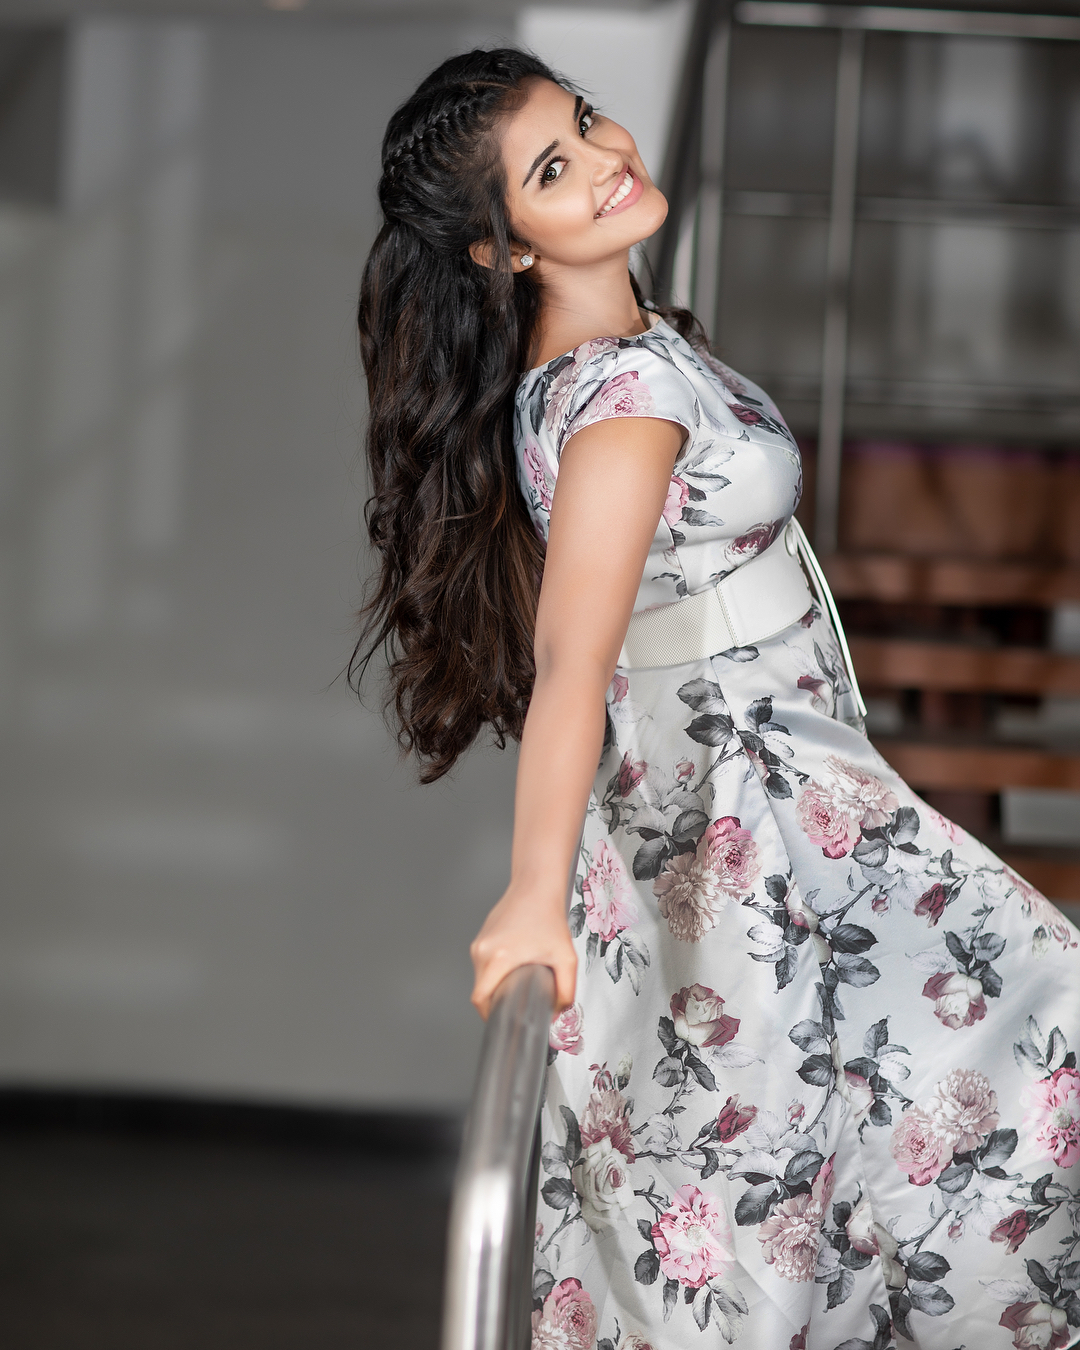 Anupama Celebrity Model Actress Indian Actors 1080x1350